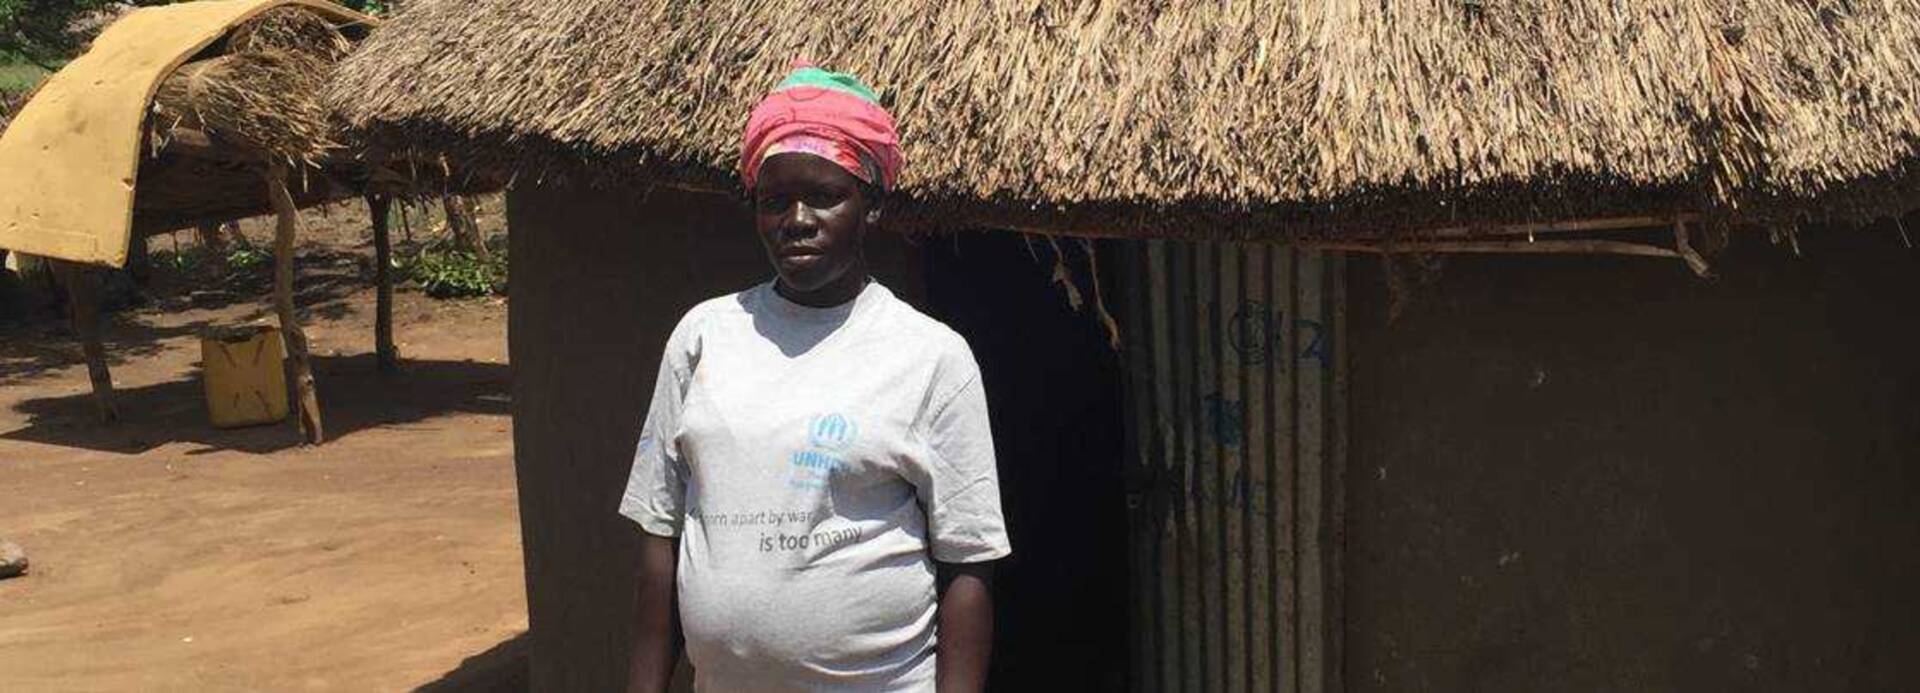 Roda steht vor ihrem Haus in Uganda.